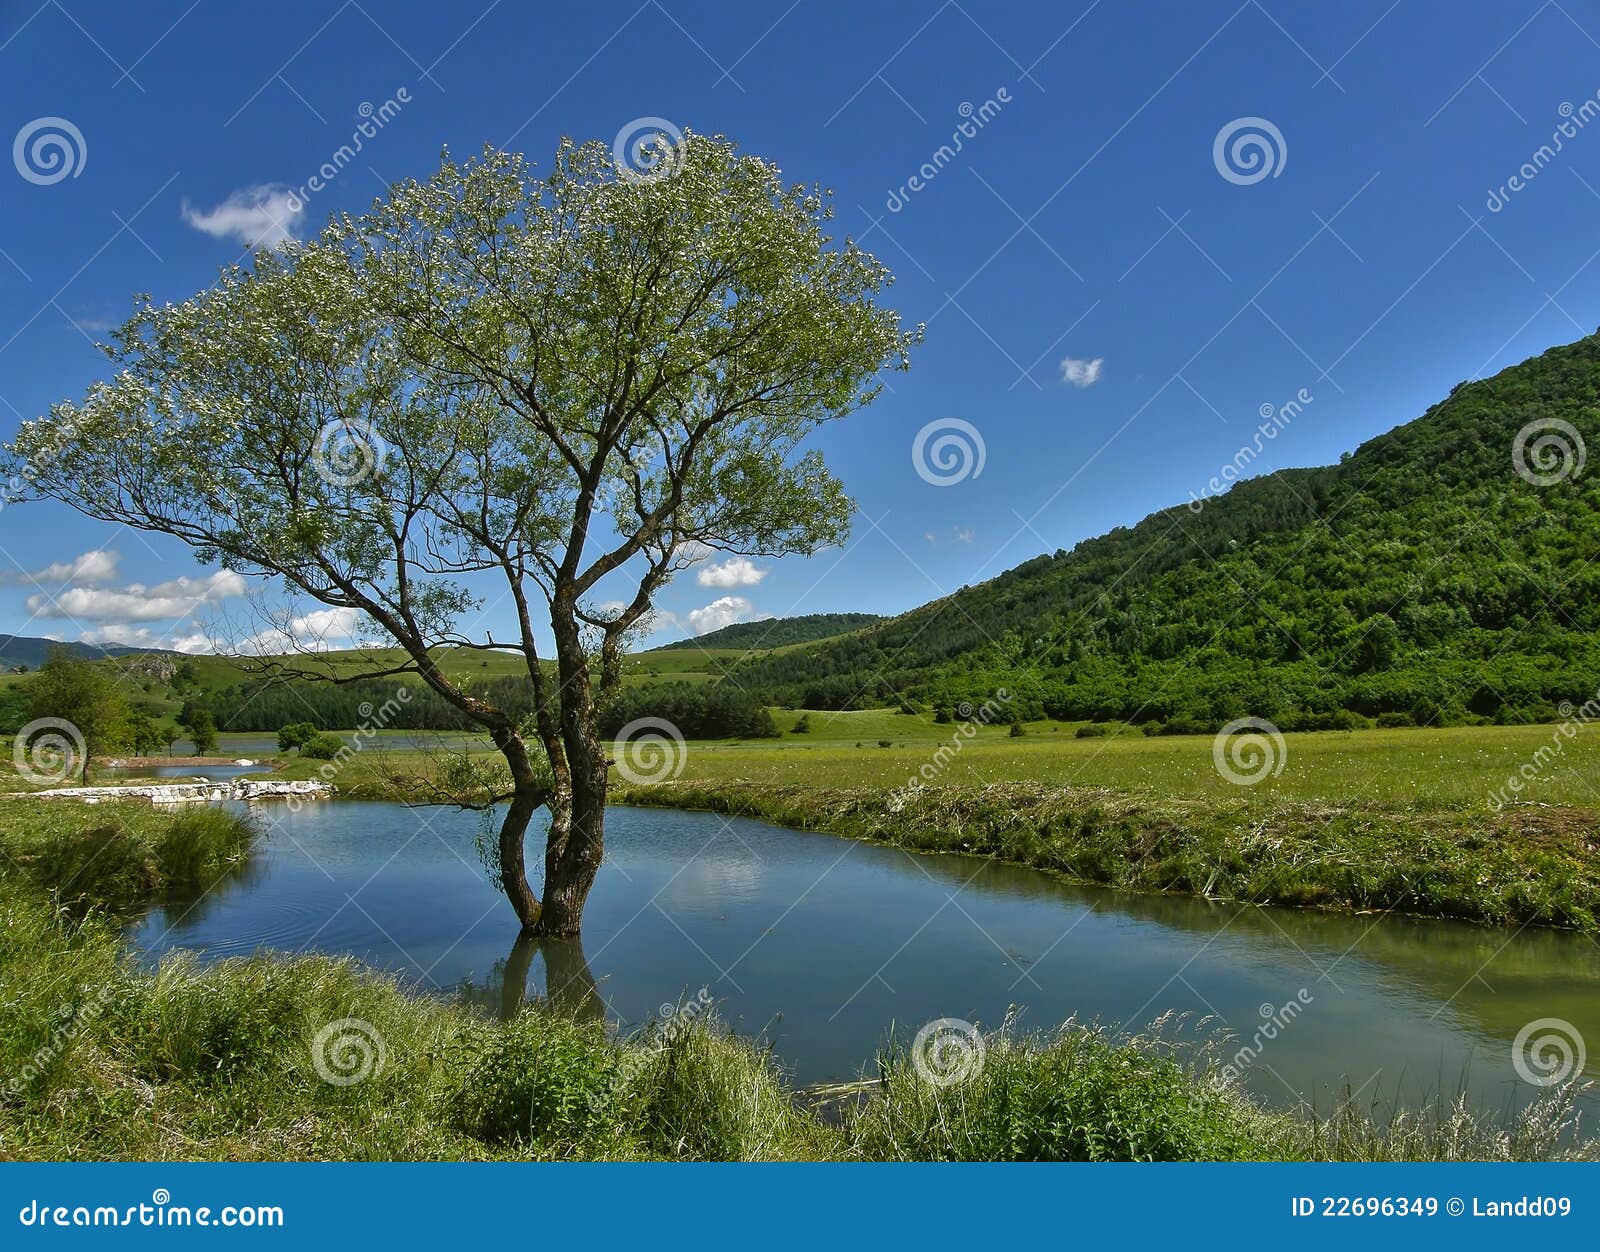 有树和水的图画图片展示